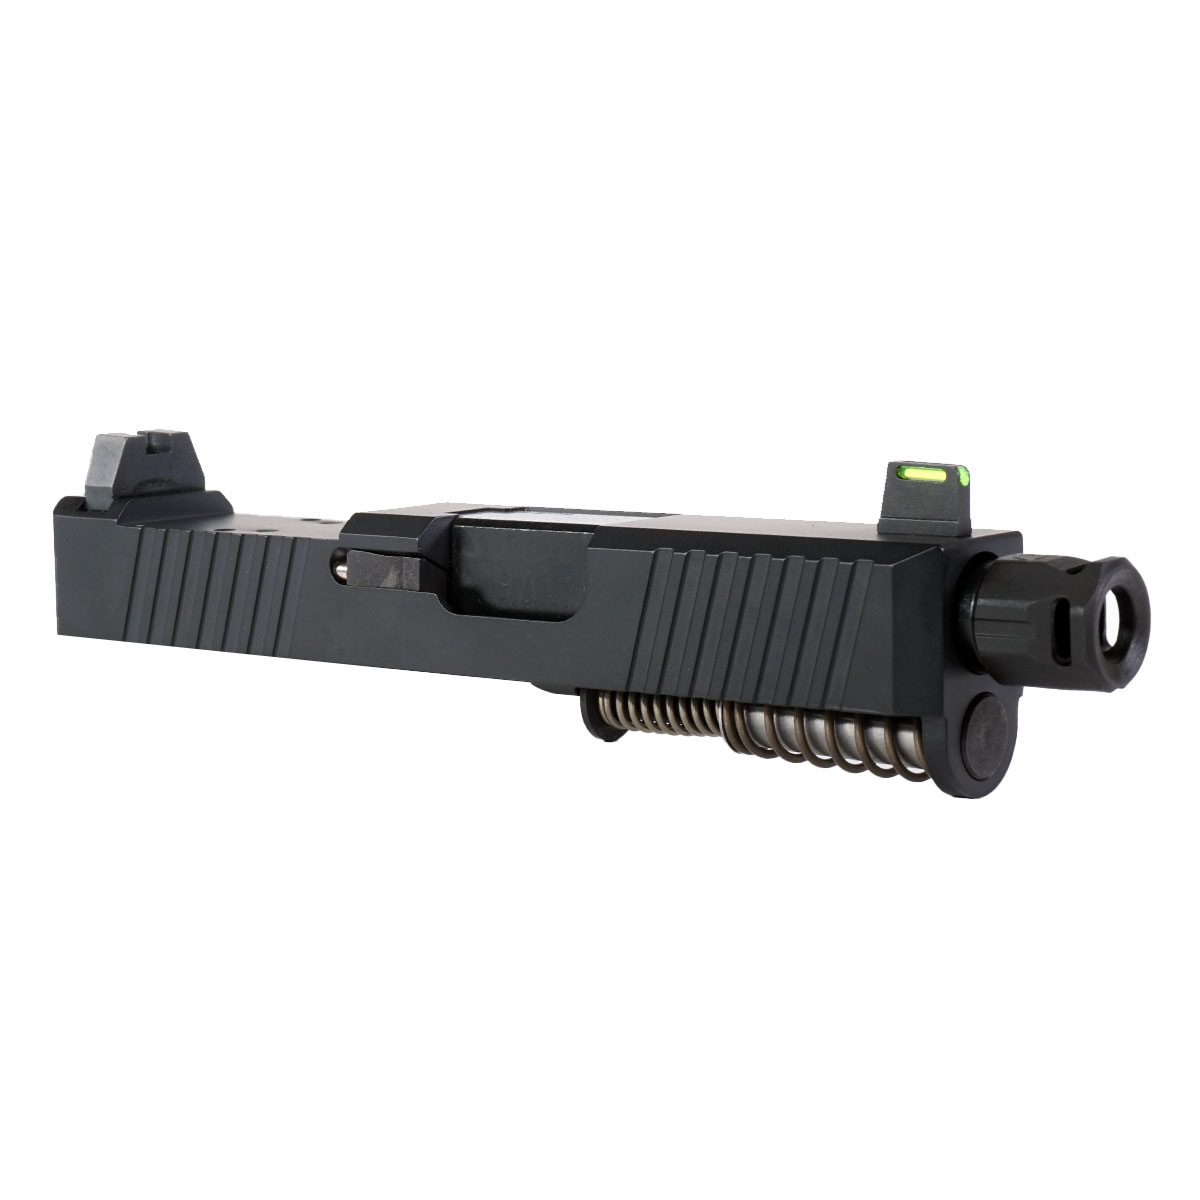 DTT 'Bad Company' 9mm Complete Slide Kit - Glock 26 Gen 1-3 Compatible